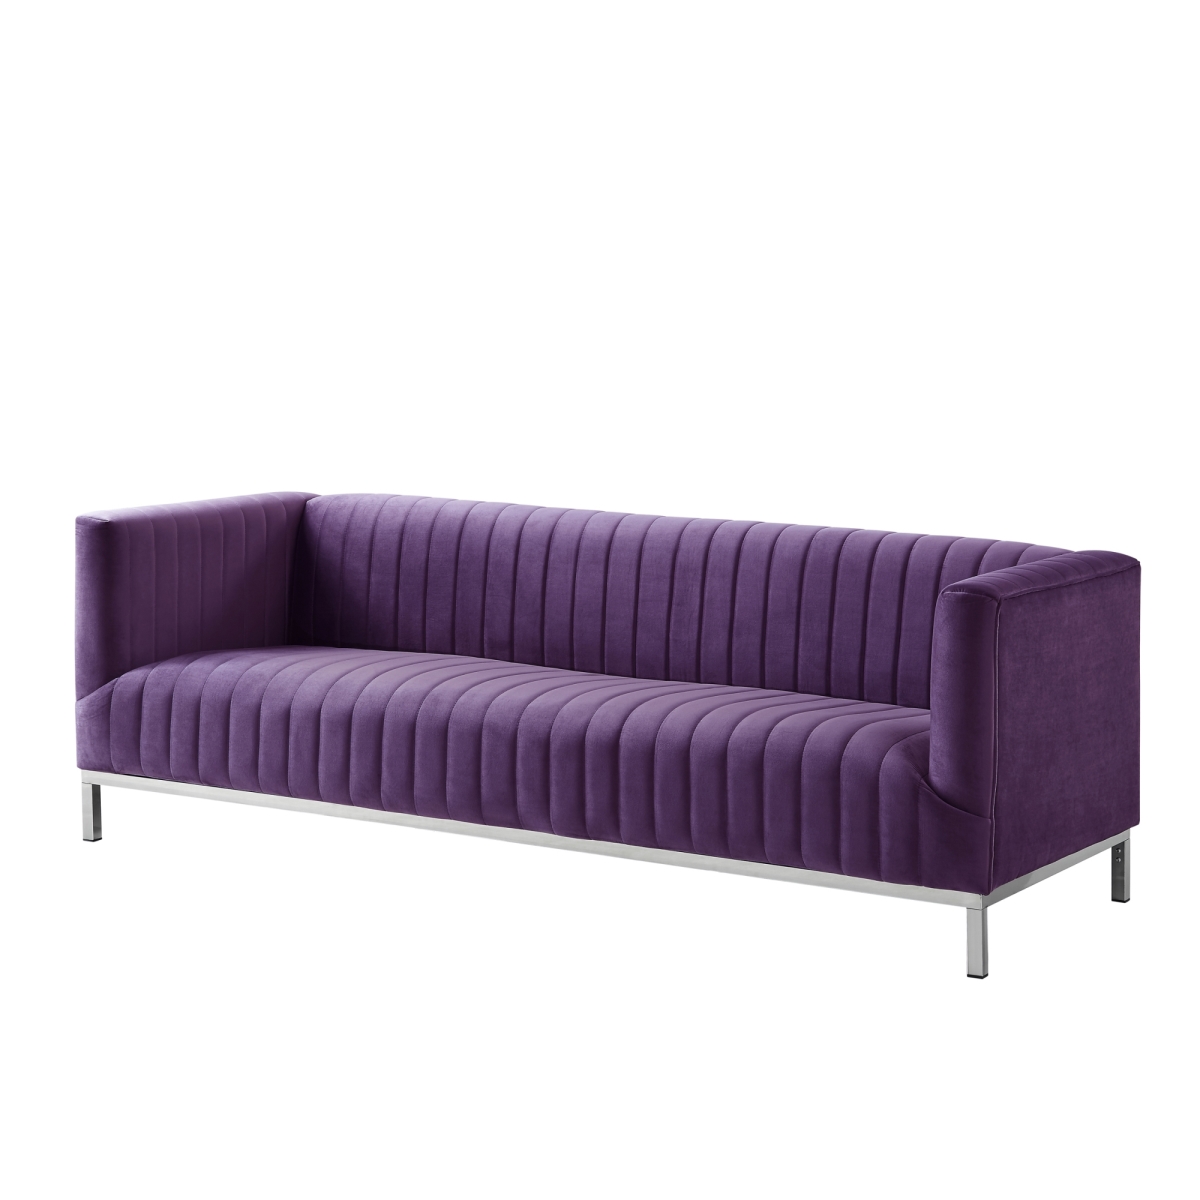 Hayden Modern Line Stitch Tufted Velvet Tuxedo Sofa Stainless Steel Chrome Leg - Purple With Chrome